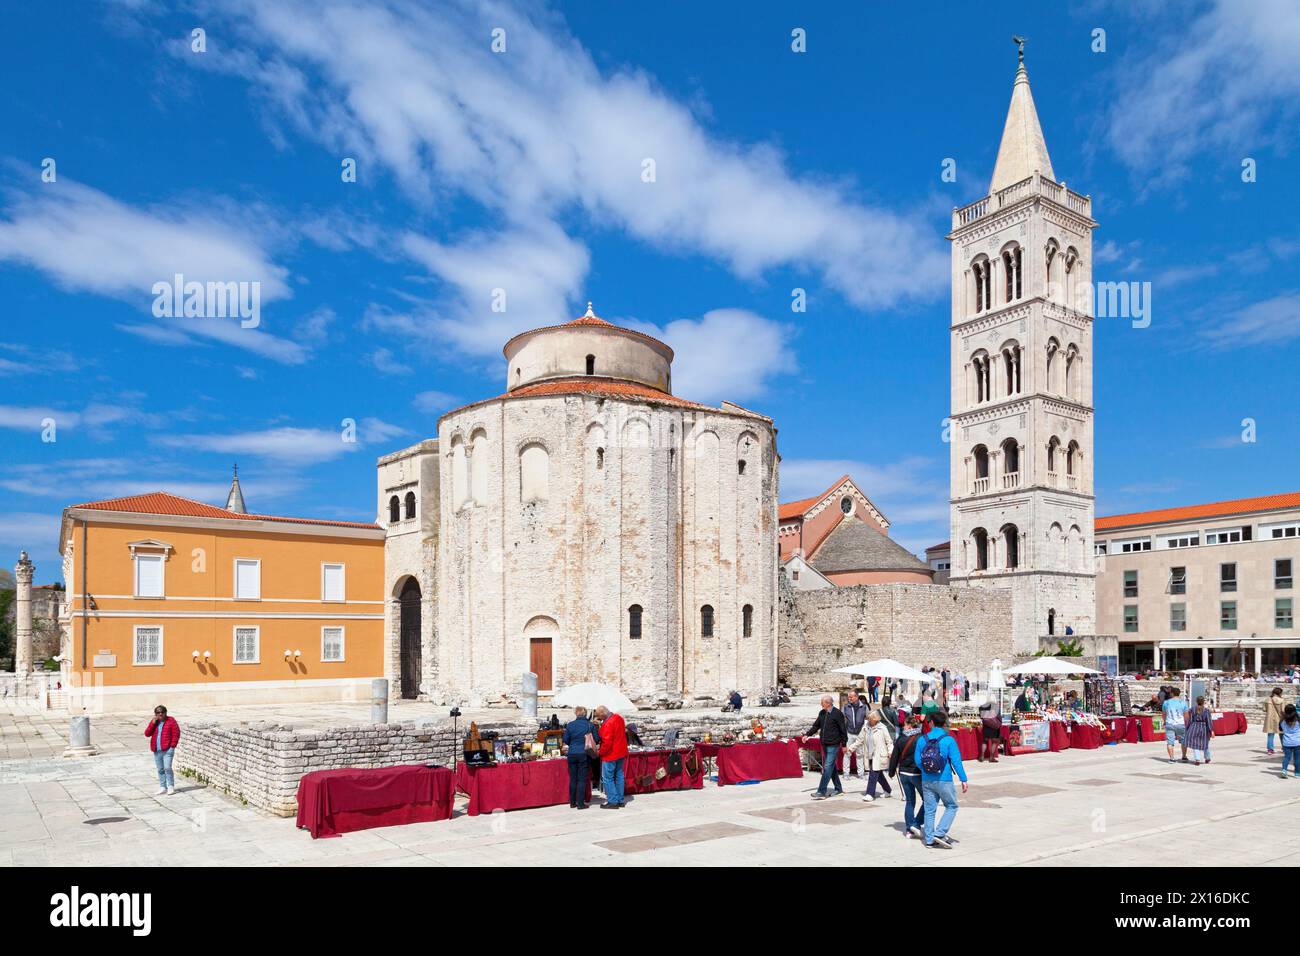 Zadar, Croatie - 14 avril 2019 : L'église Saint-Donat entre le clocher de la cathédrale de Zadar et le Stup srama (pilier de la honte). Banque D'Images